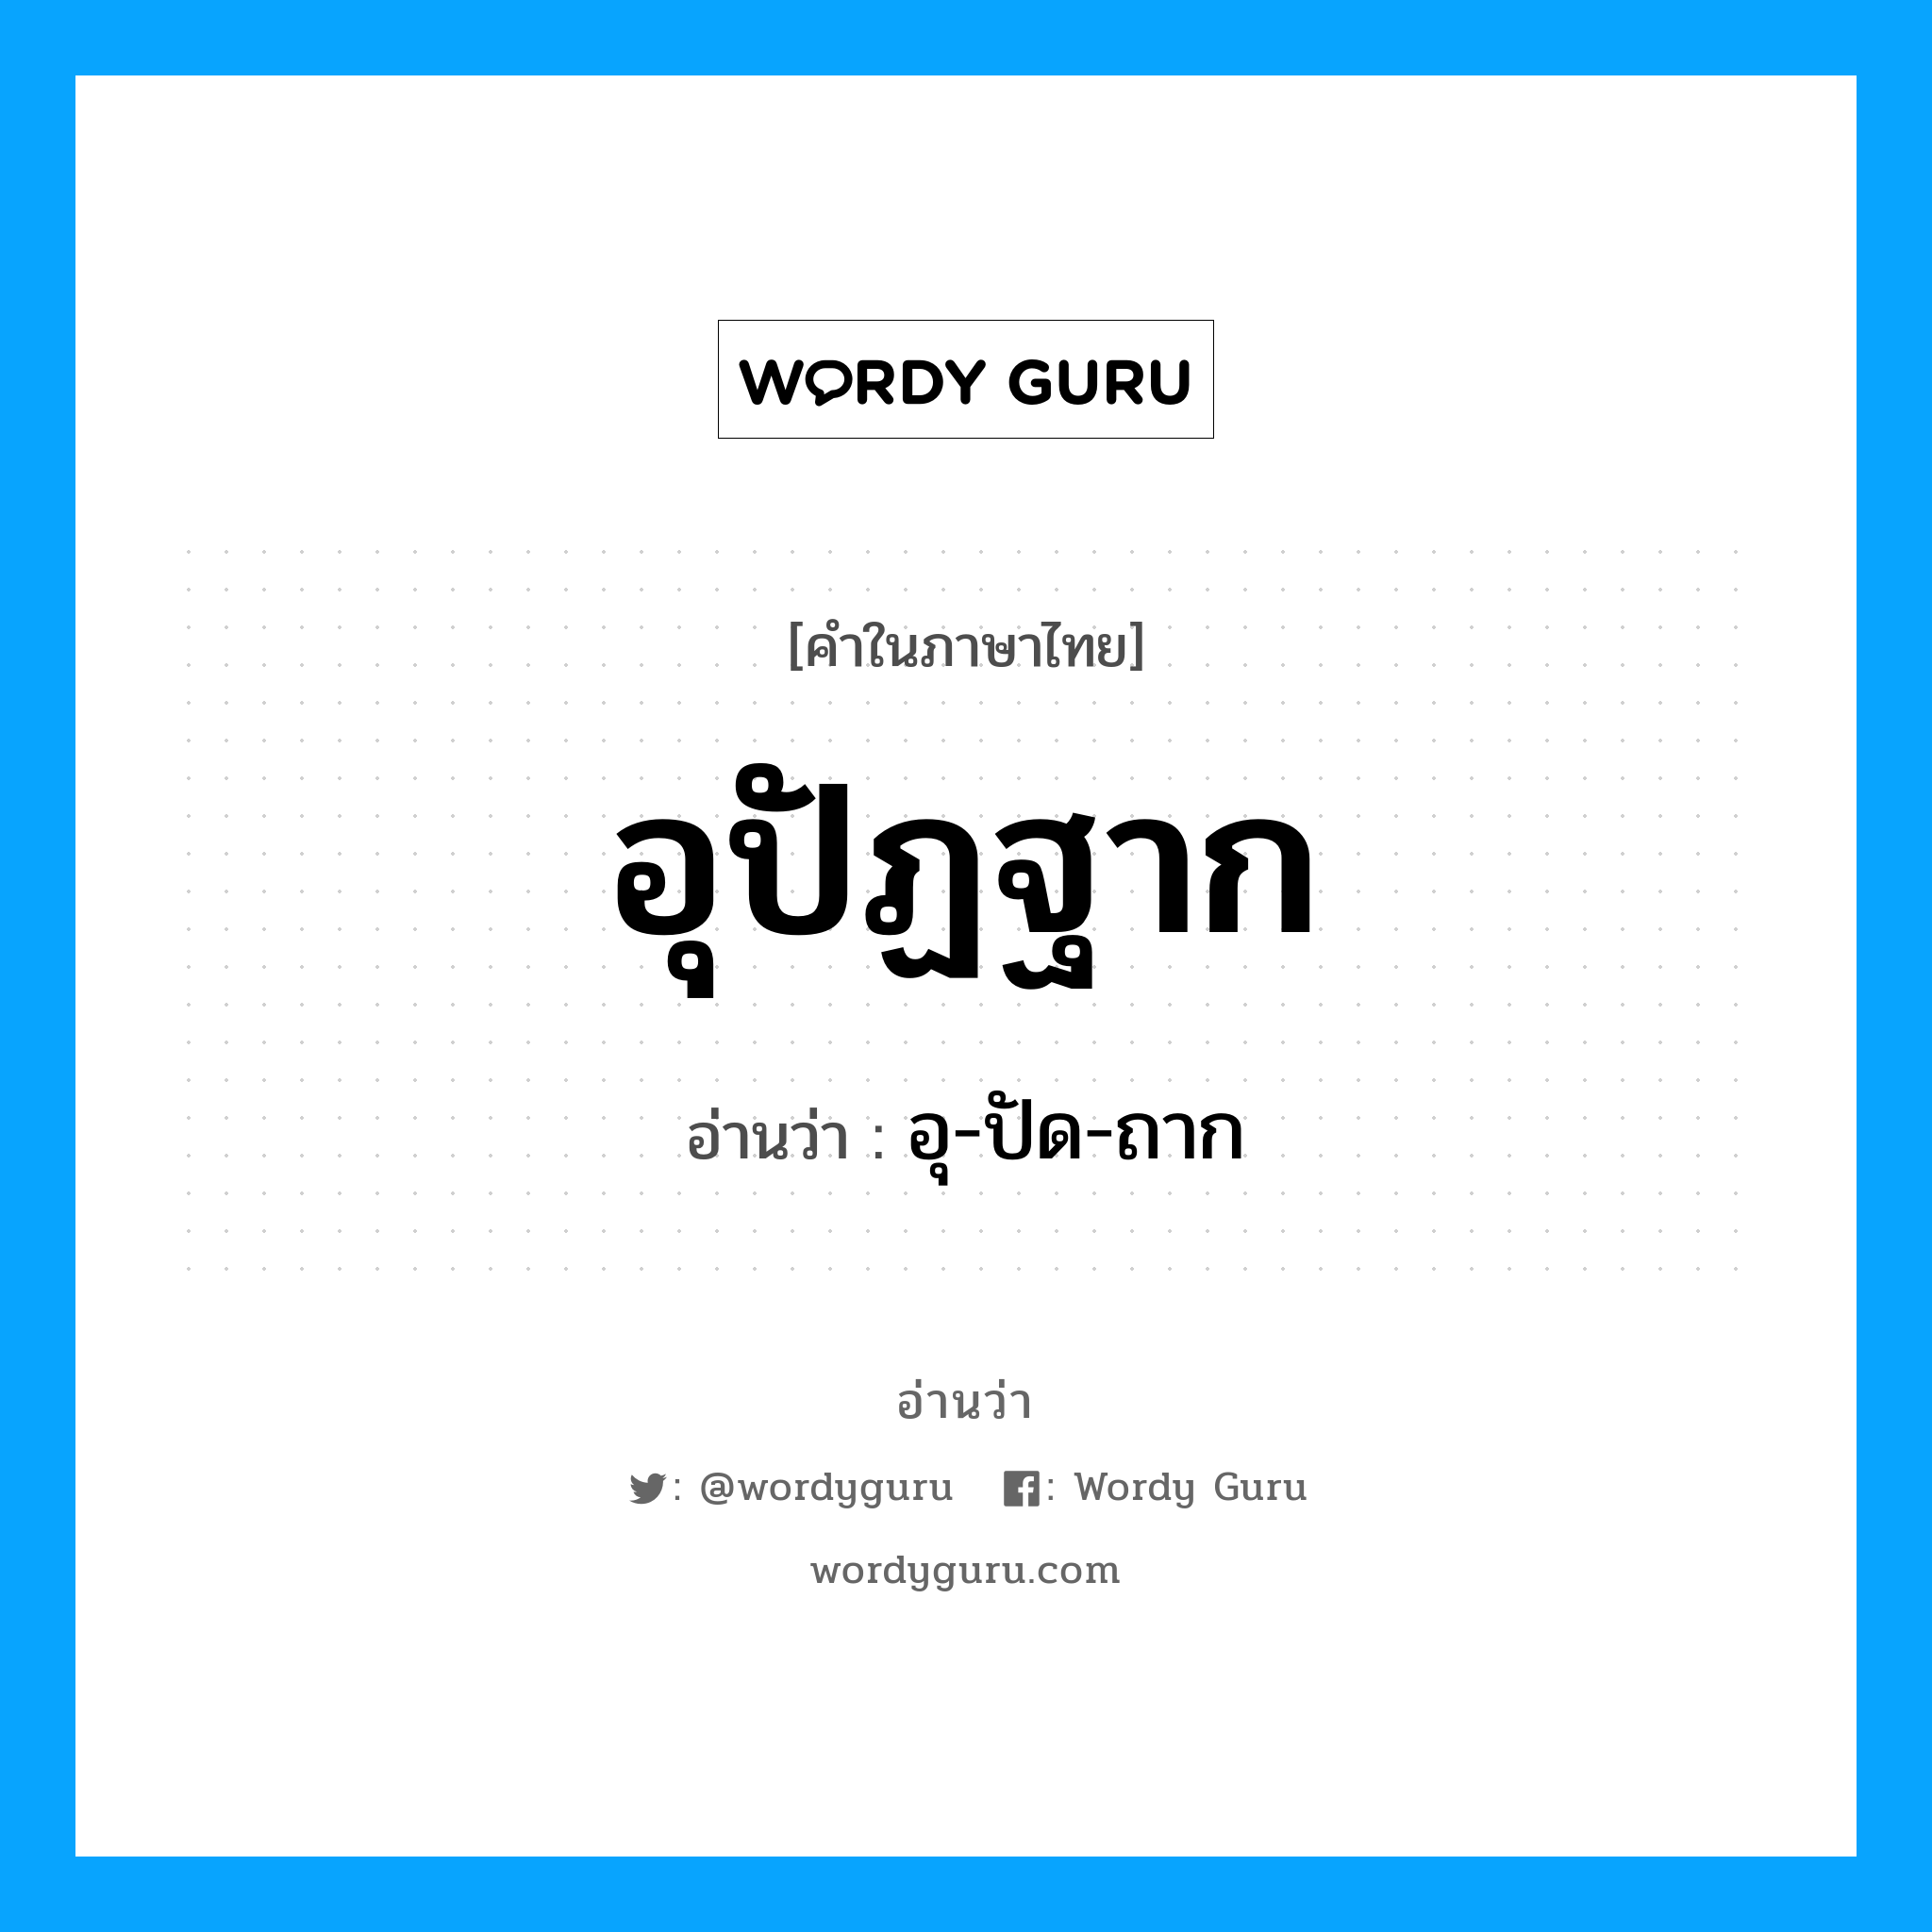 อุ-ปัด-ถาก เป็นคำอ่านของคำไหน?, คำในภาษาไทย อุ-ปัด-ถาก อ่านว่า อุปัฏฐาก